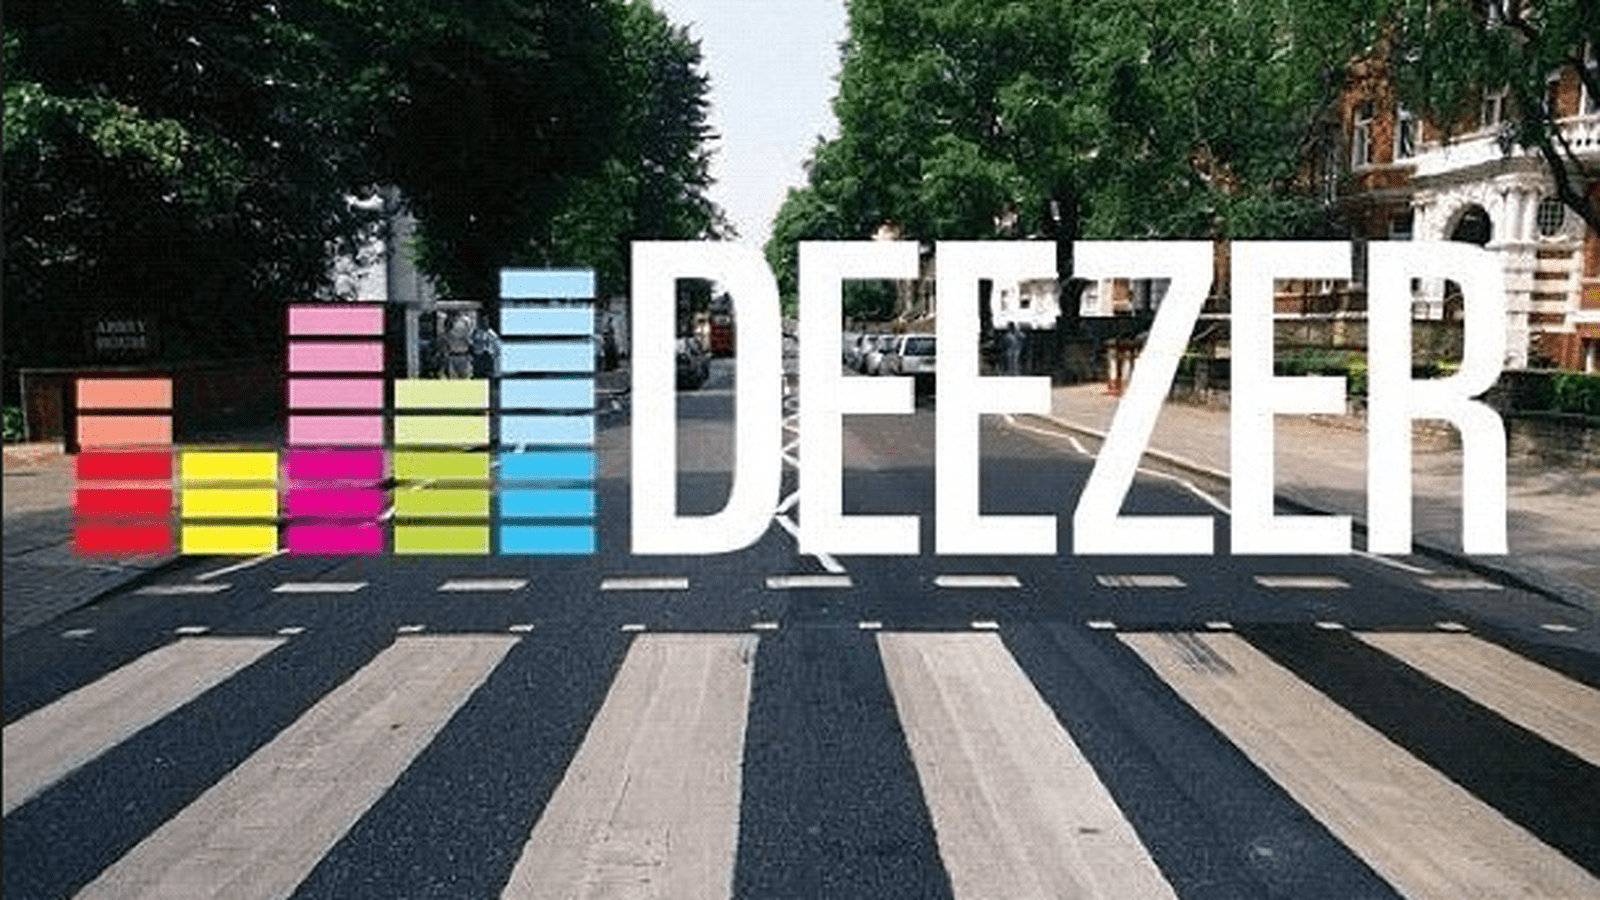 Deezer Wallpapers - Top Free Deezer Backgrounds - WallpaperAccess